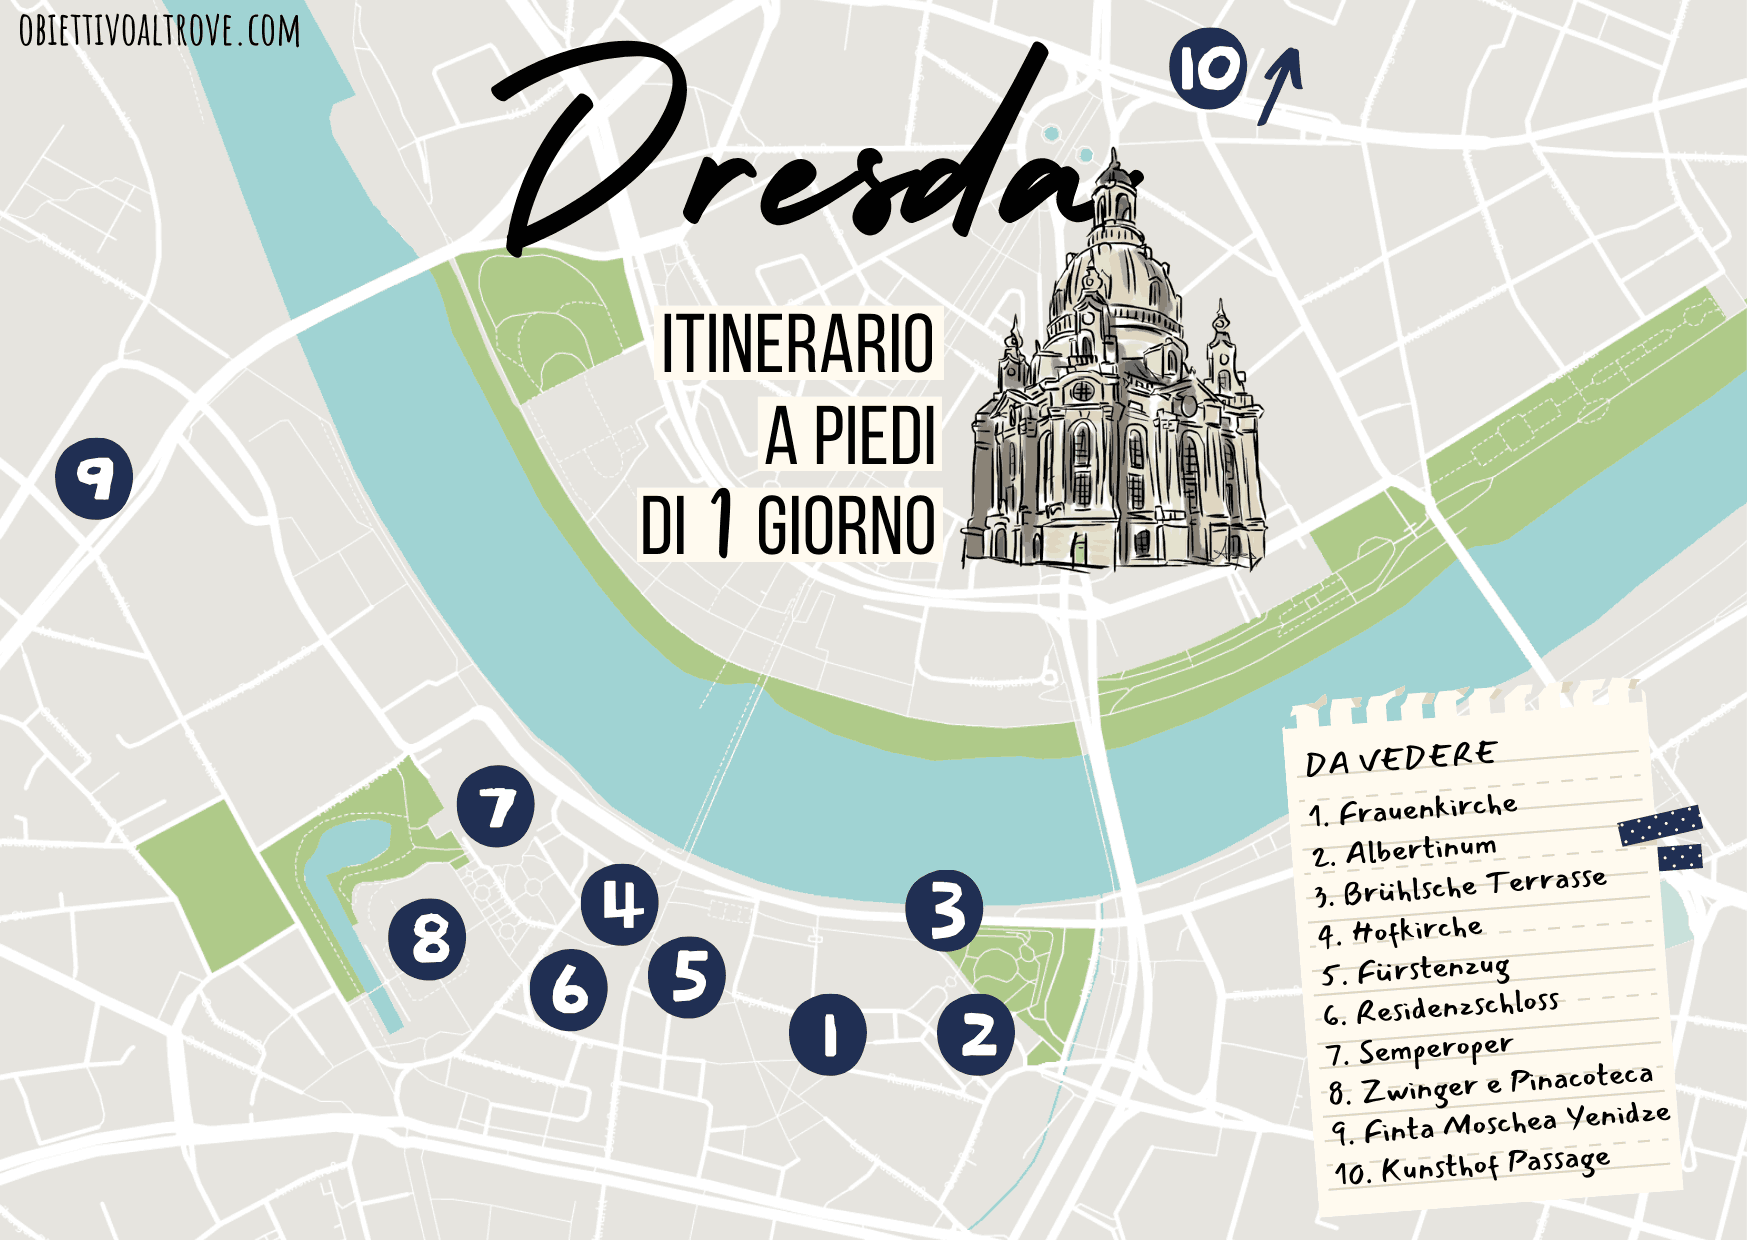 Dresda - Itinerario a piedi di un giorno